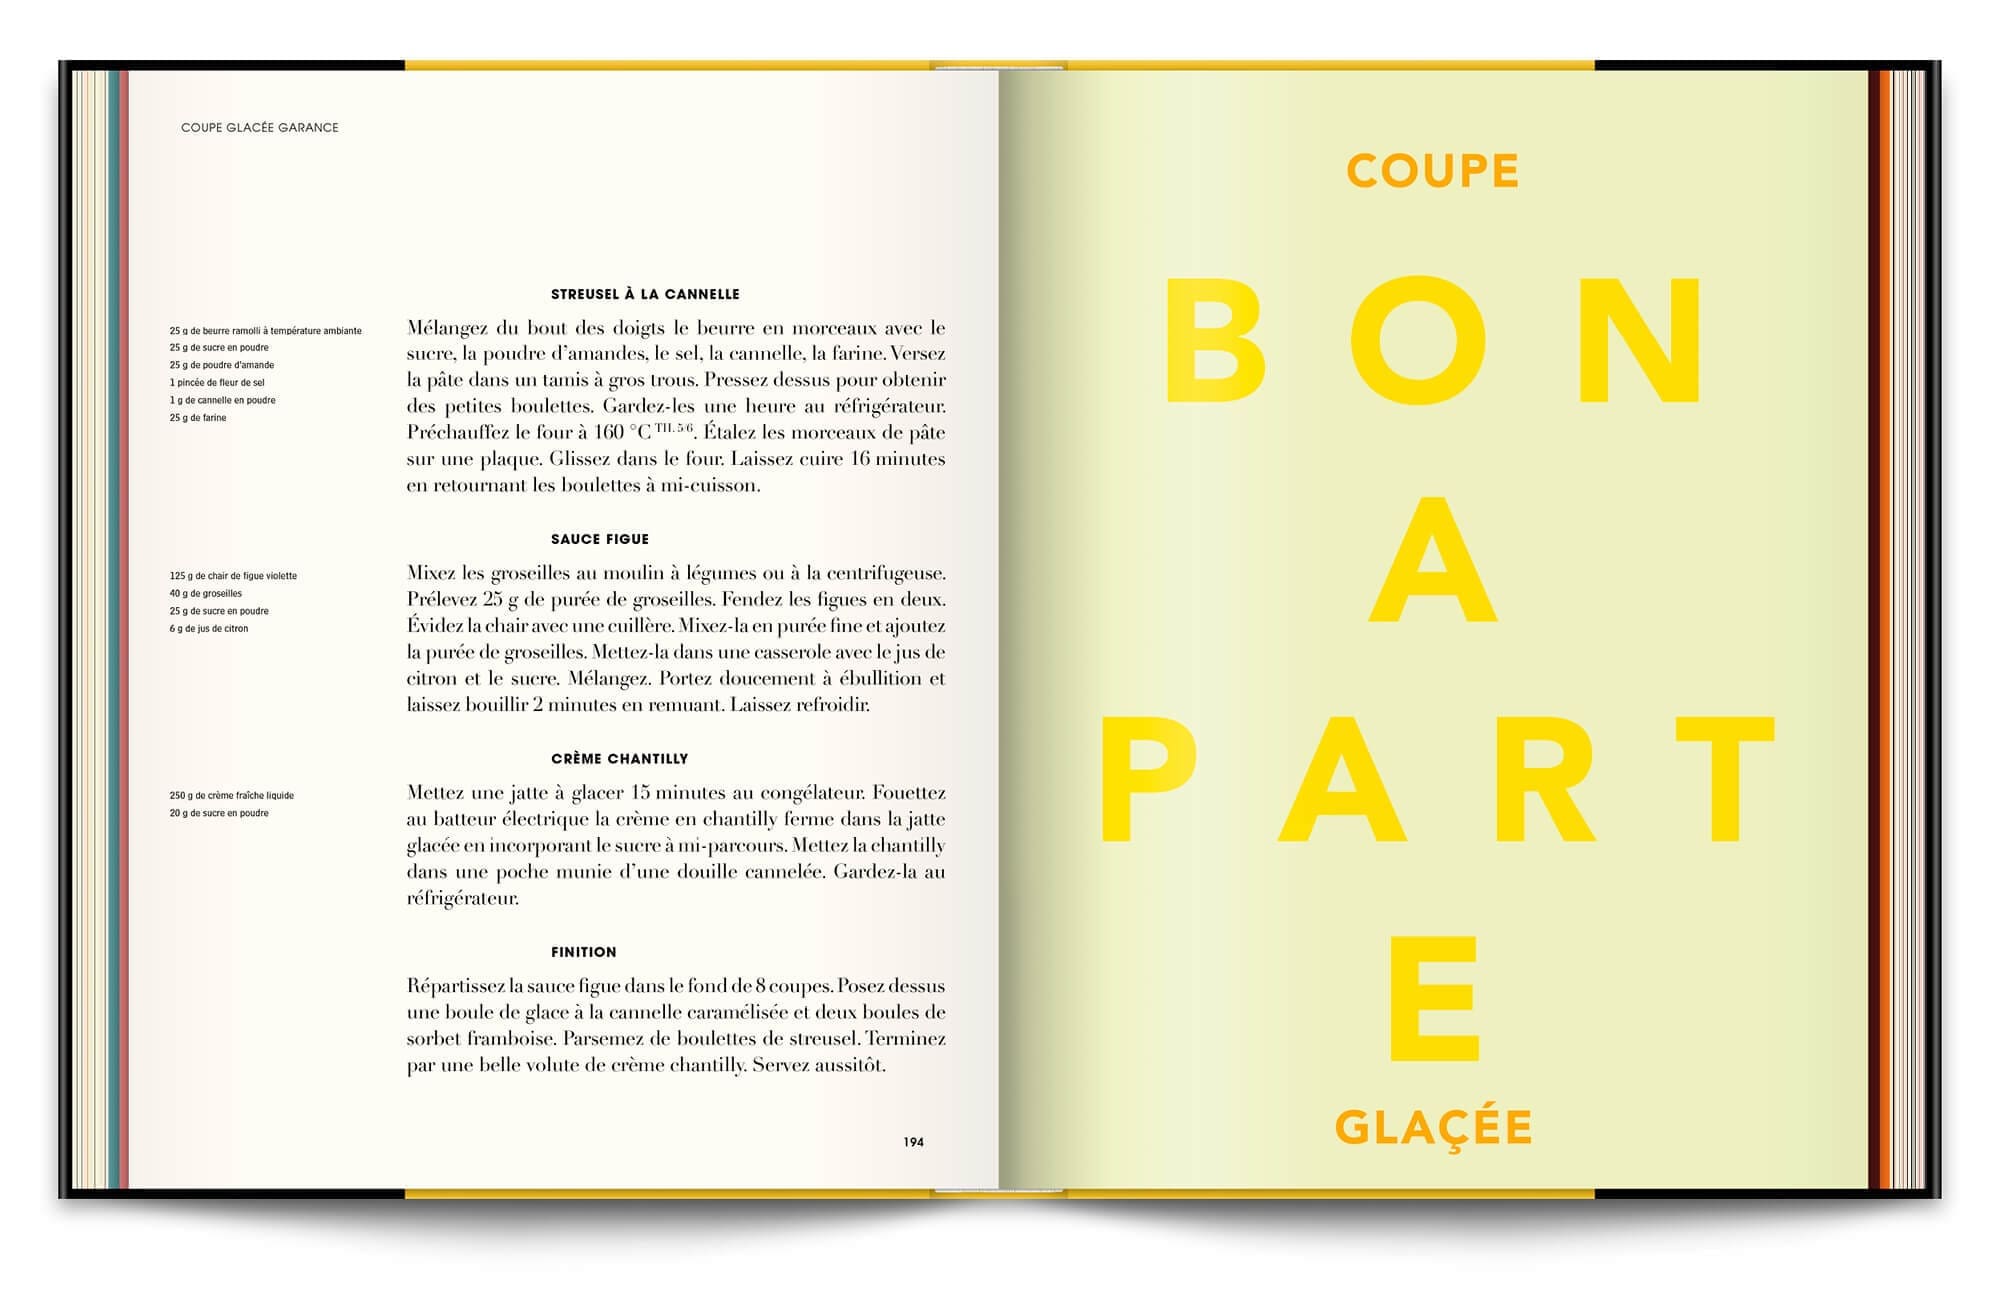 Le livre Infiniment de Pierre Hermé, typographie expressive en rapport avec les recettes et couleurs acidulées pour la coupe glacée Bonaparte, design éditorial IchetKar